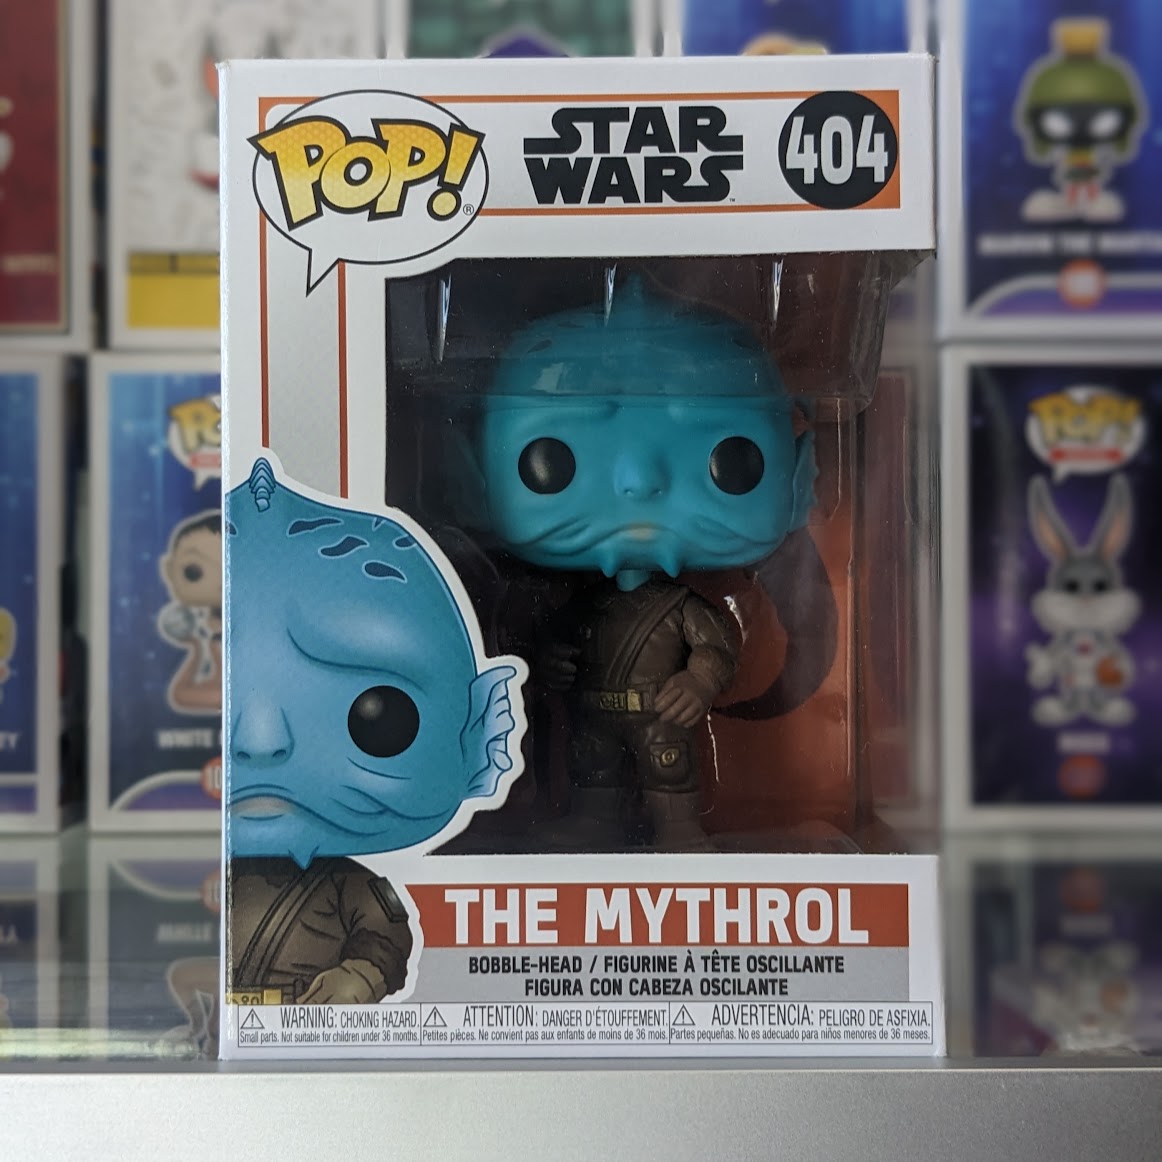 The Mythrol Star Wars #404 Pop!